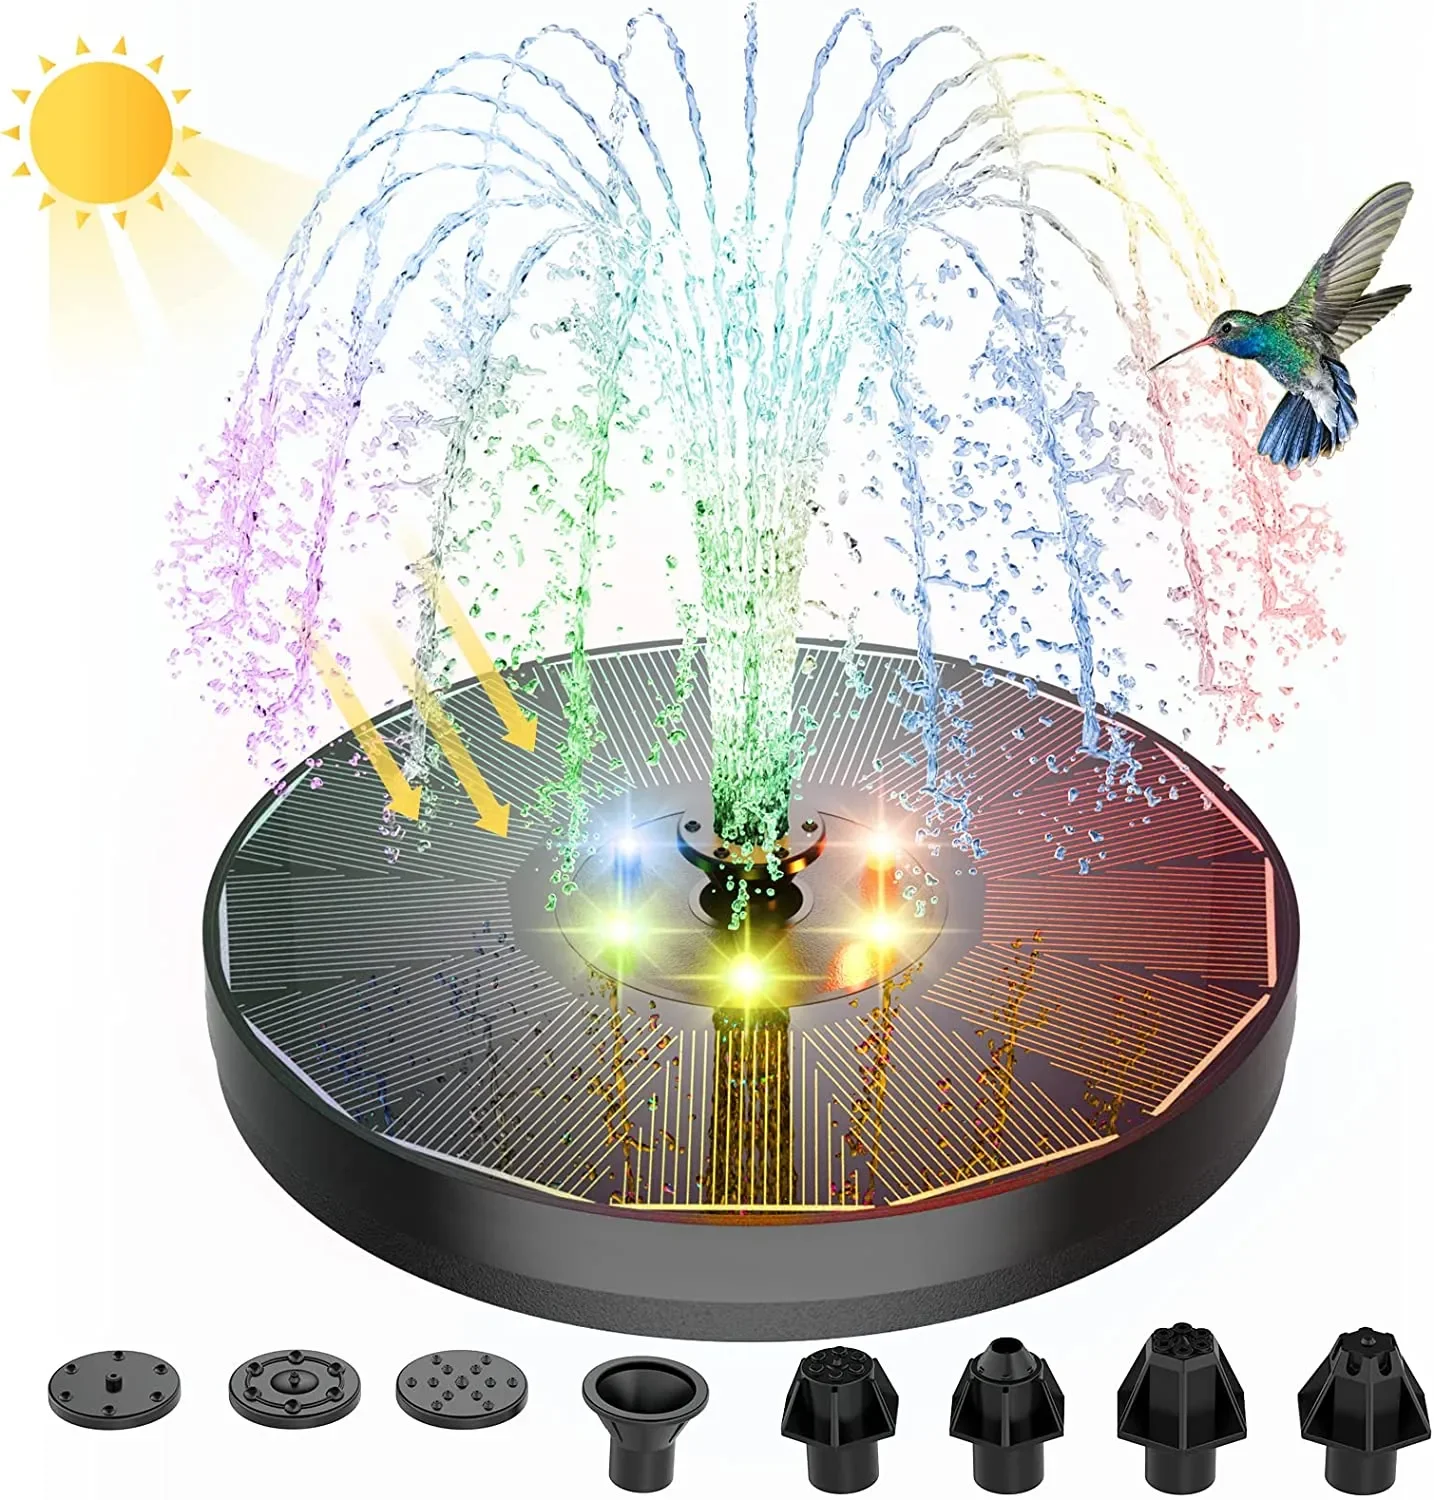 

(1 вариант) водяной насос на солнечной батарее с цветными фонарями для птичьей ванны, 3 Вт, с 7 насадками и 4 фиксаторами, плавающий садовый Pon